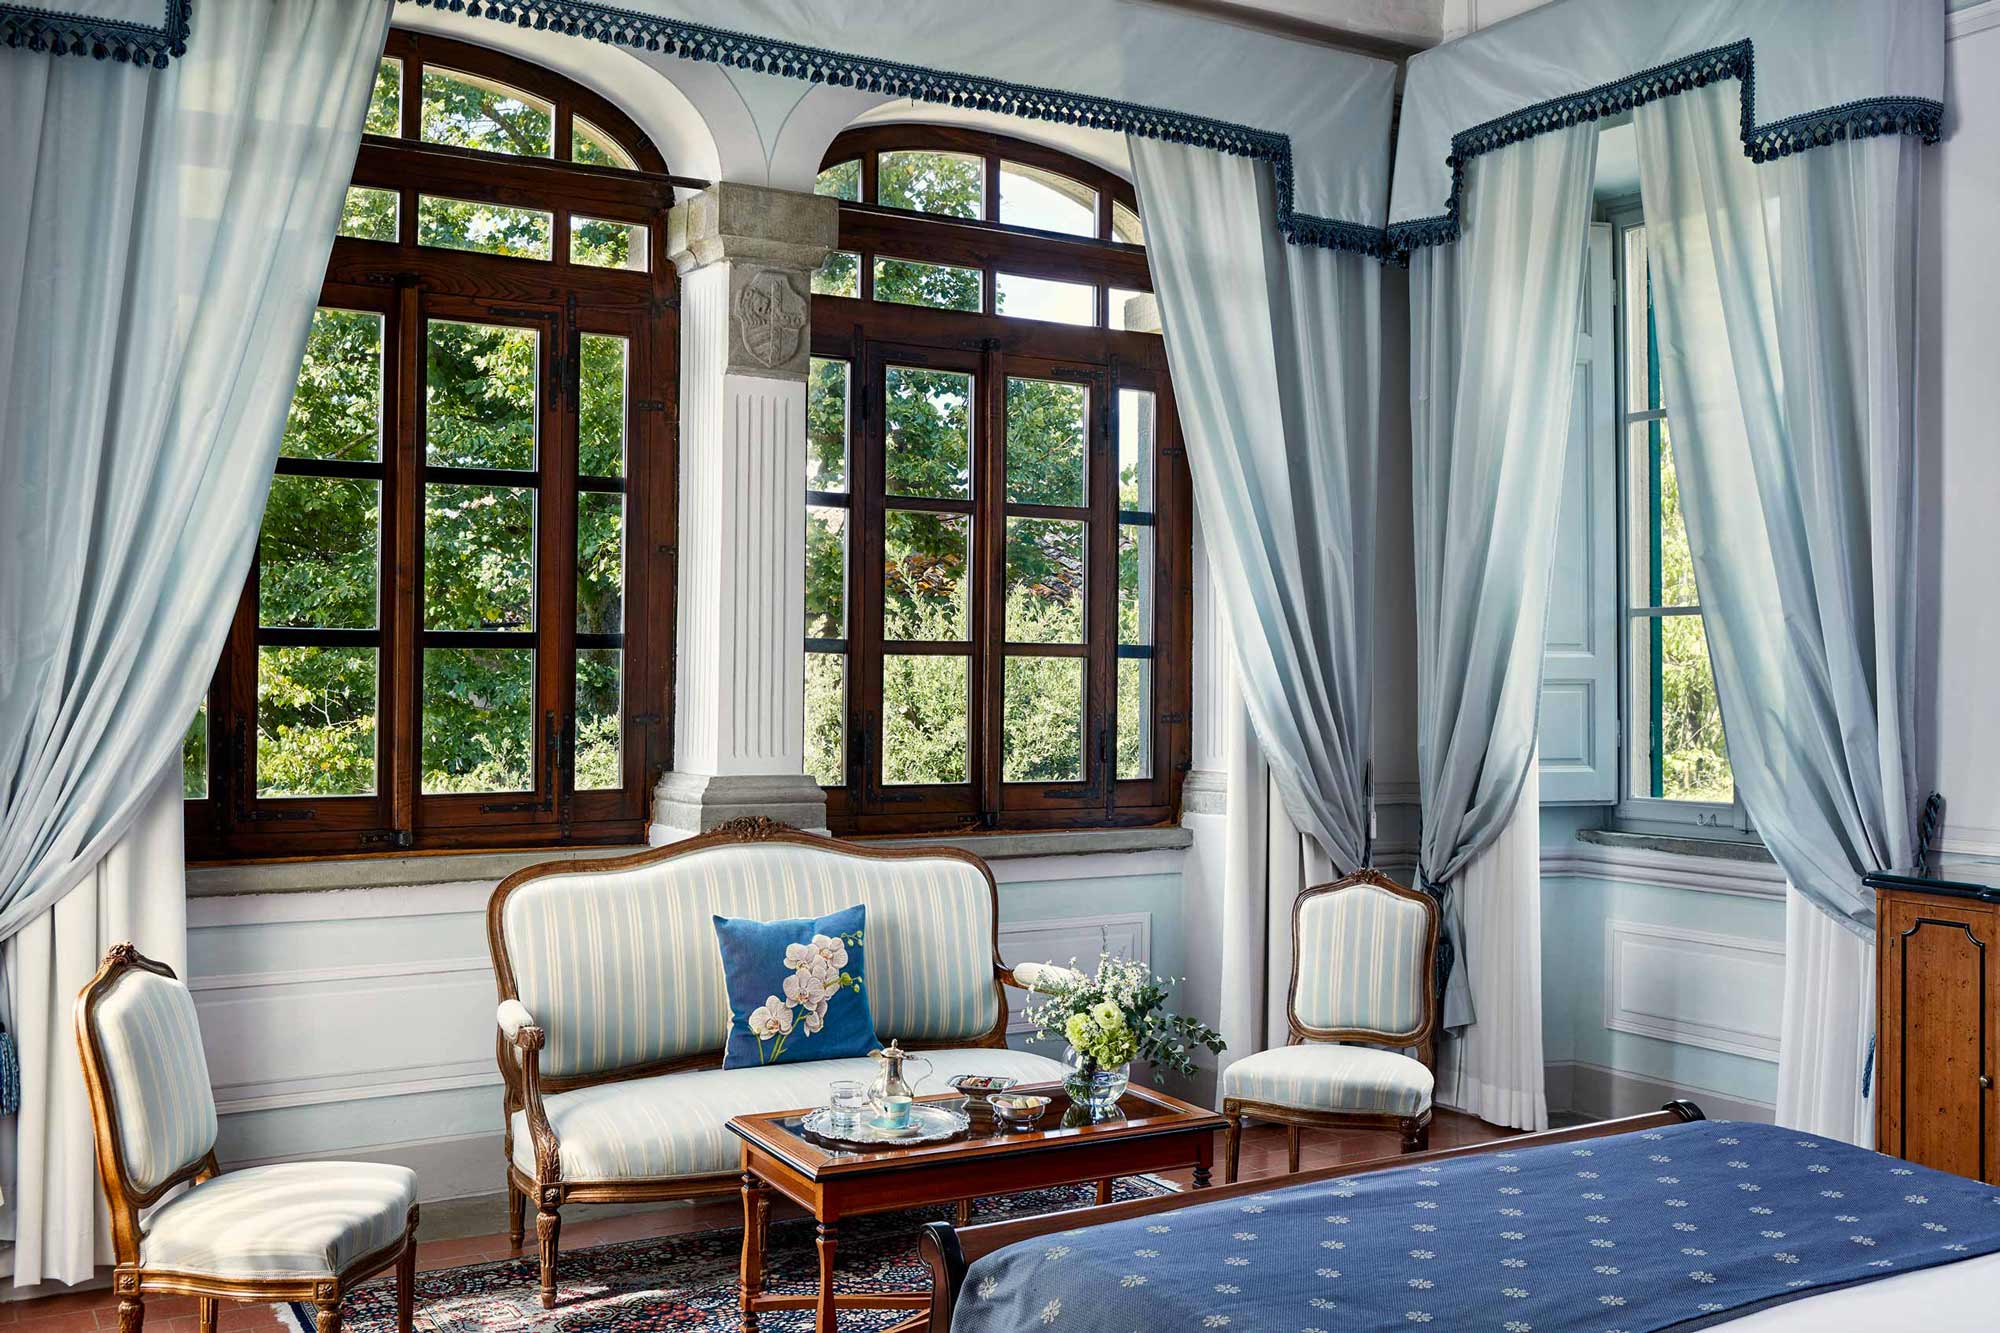 Junior Suite in Villa di Piazzano SLH Luxury Hotel Cortona tuscany